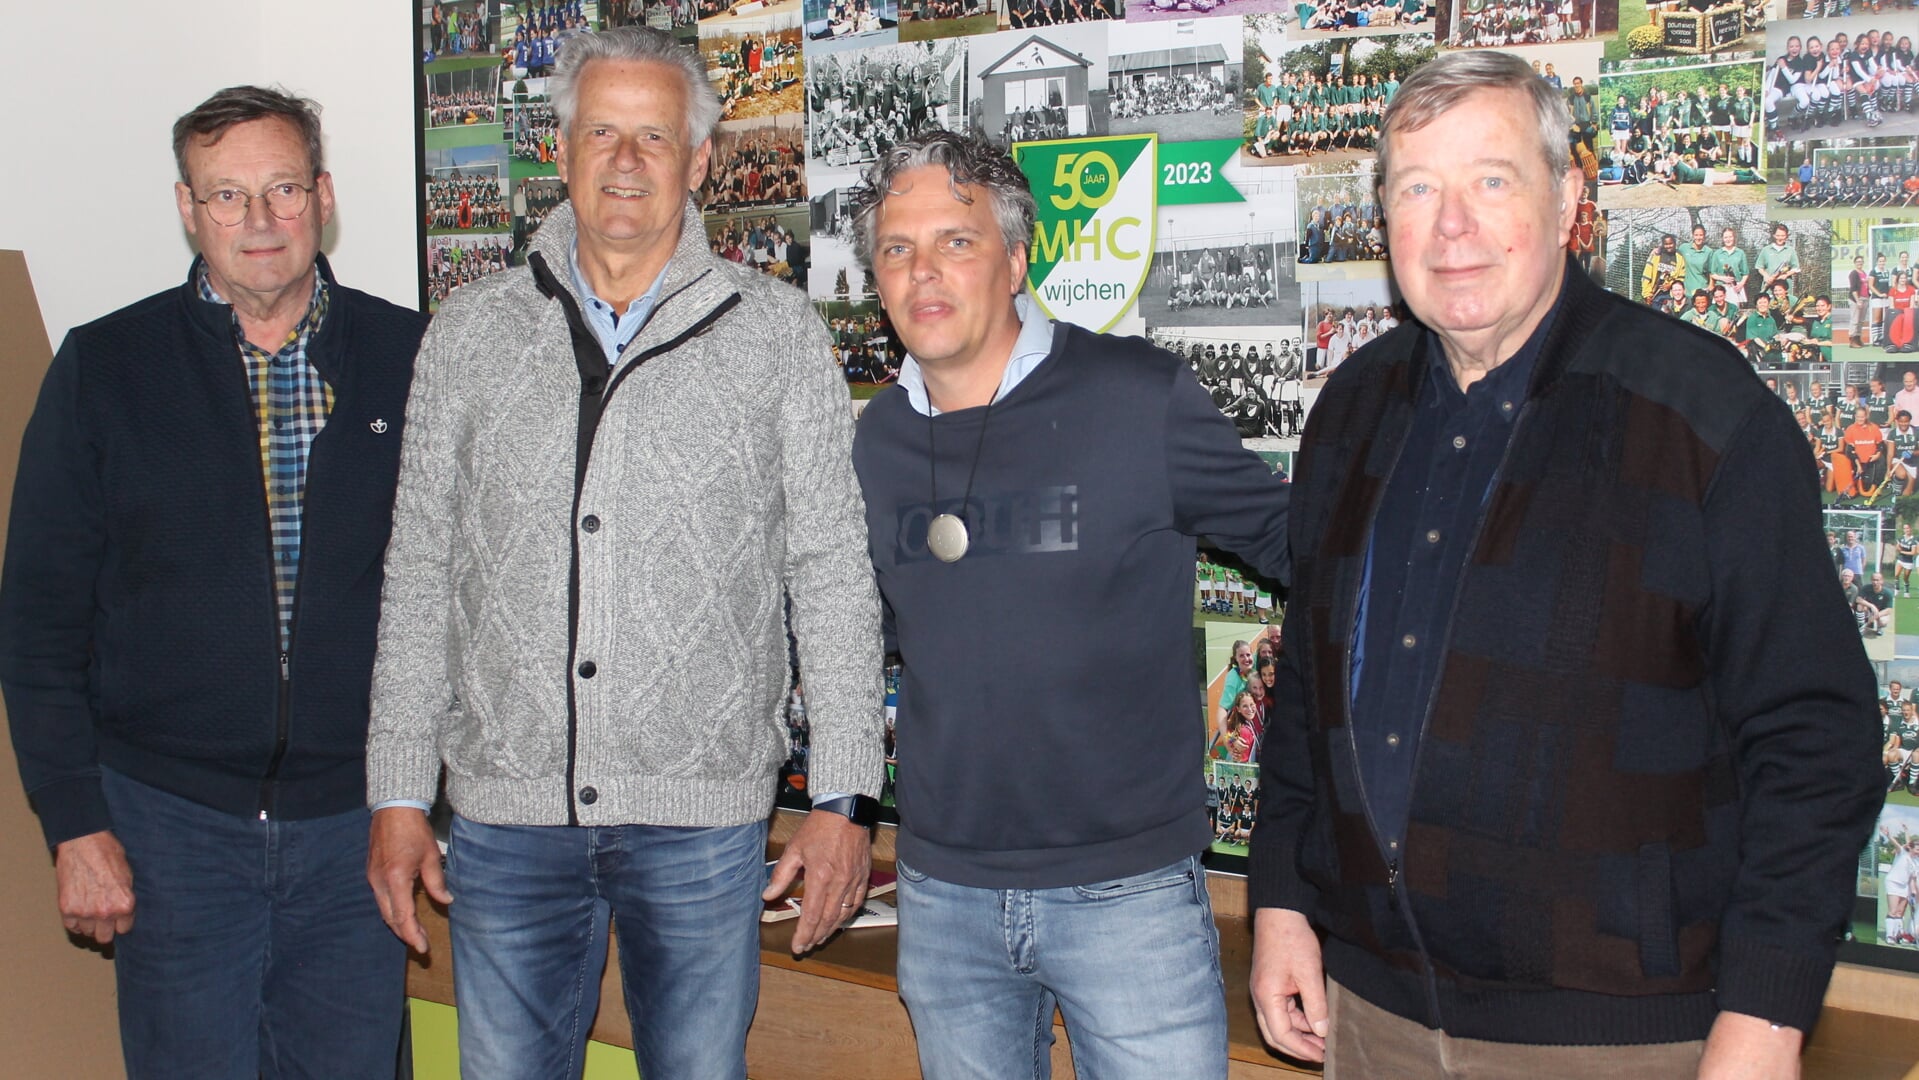 De oud-voorzitters van MHC Wijchen met derde van links huidig voorzitter Harmen Schipper